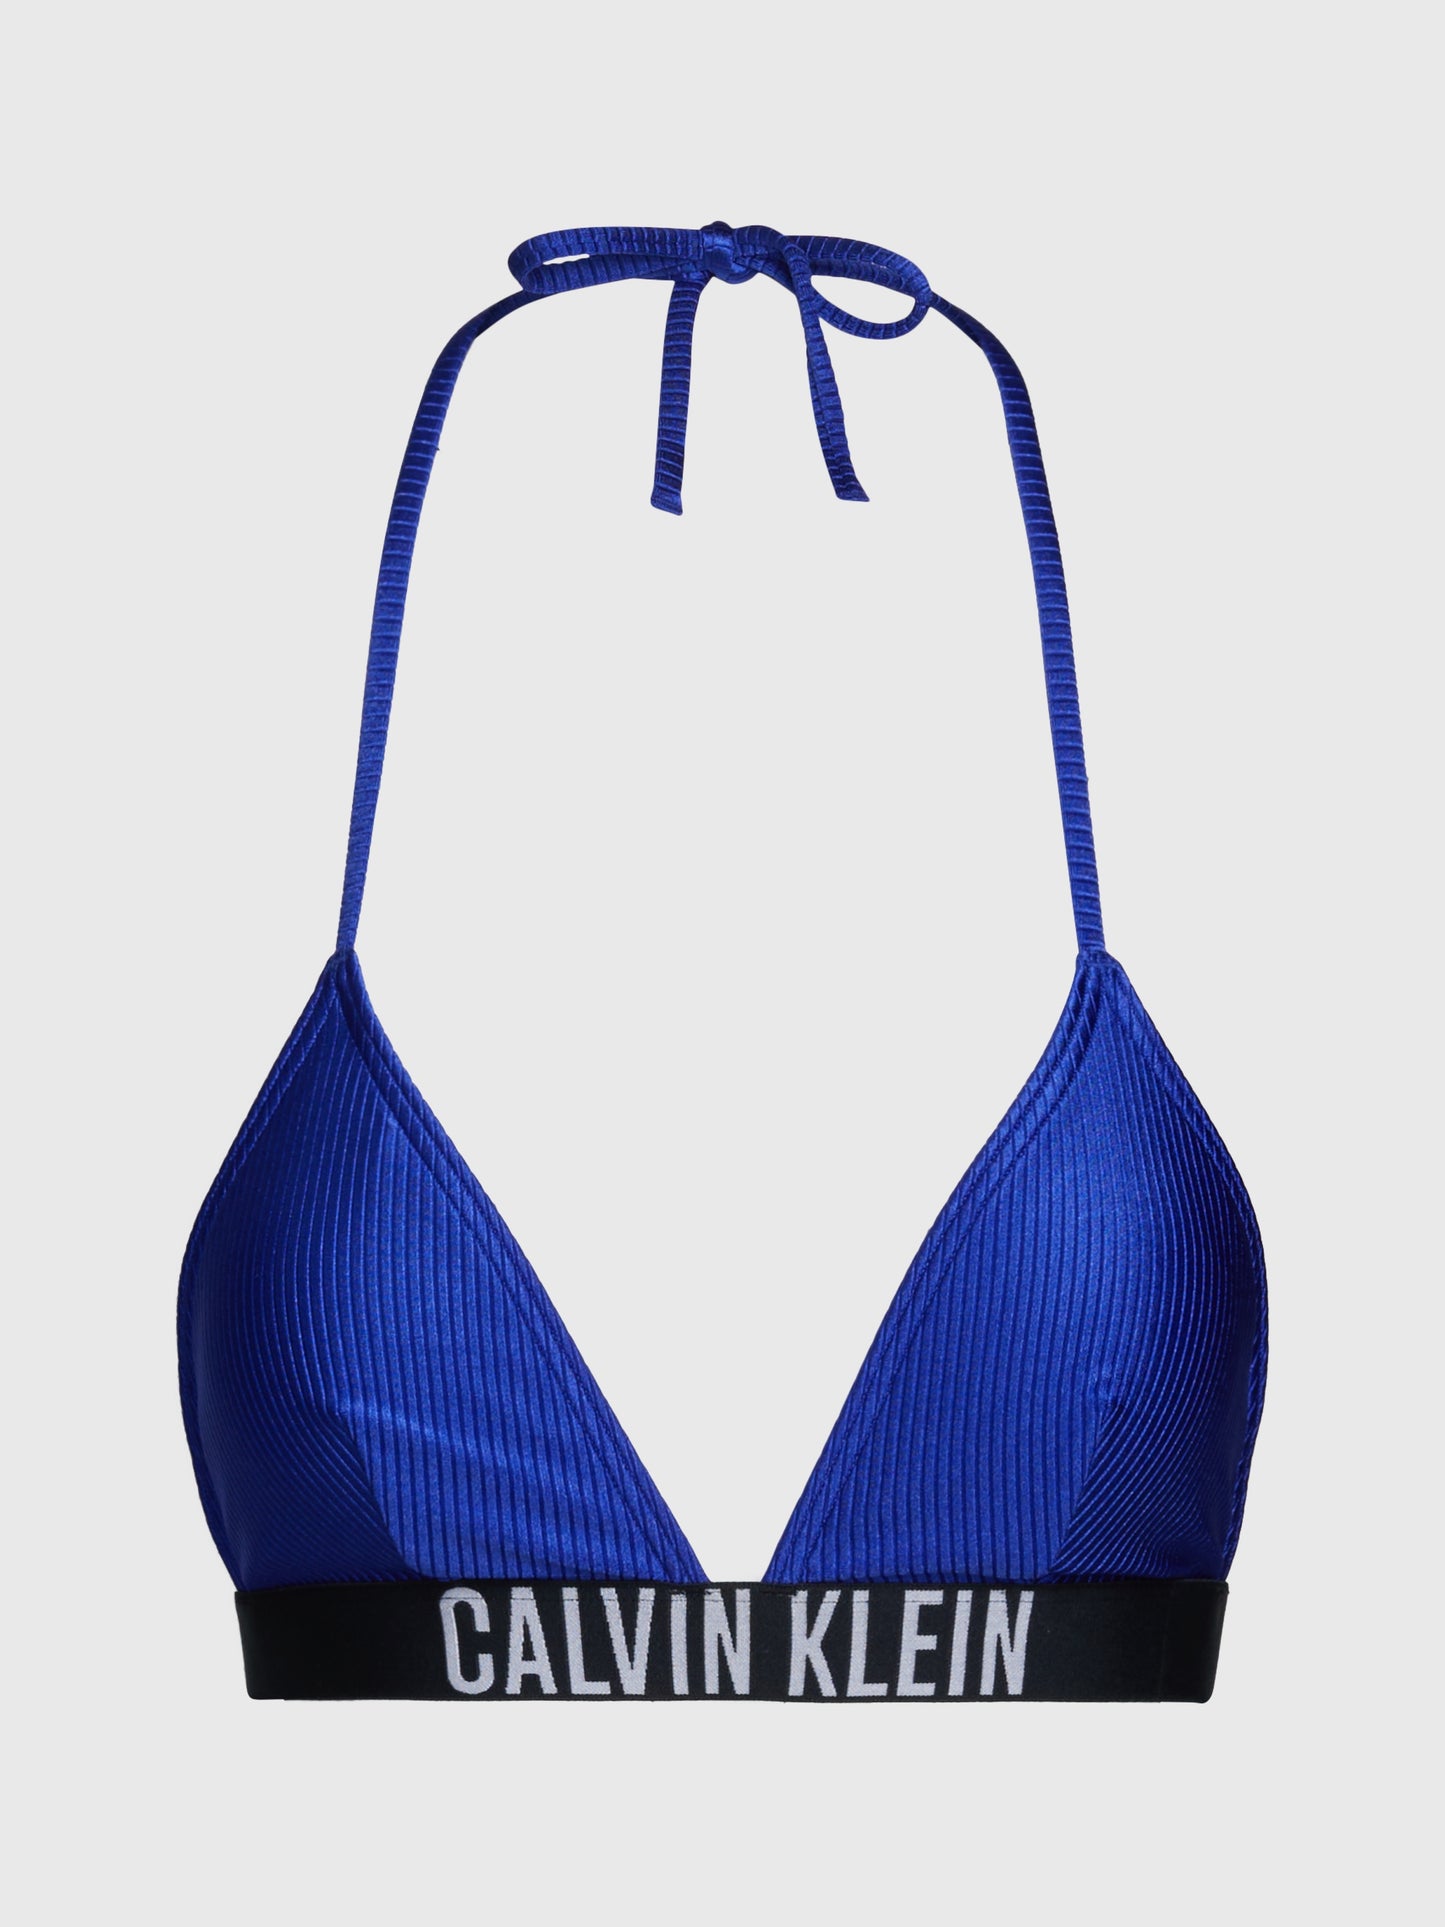 CALVIN KLEIN TRIANGLE Bikiniyläosa